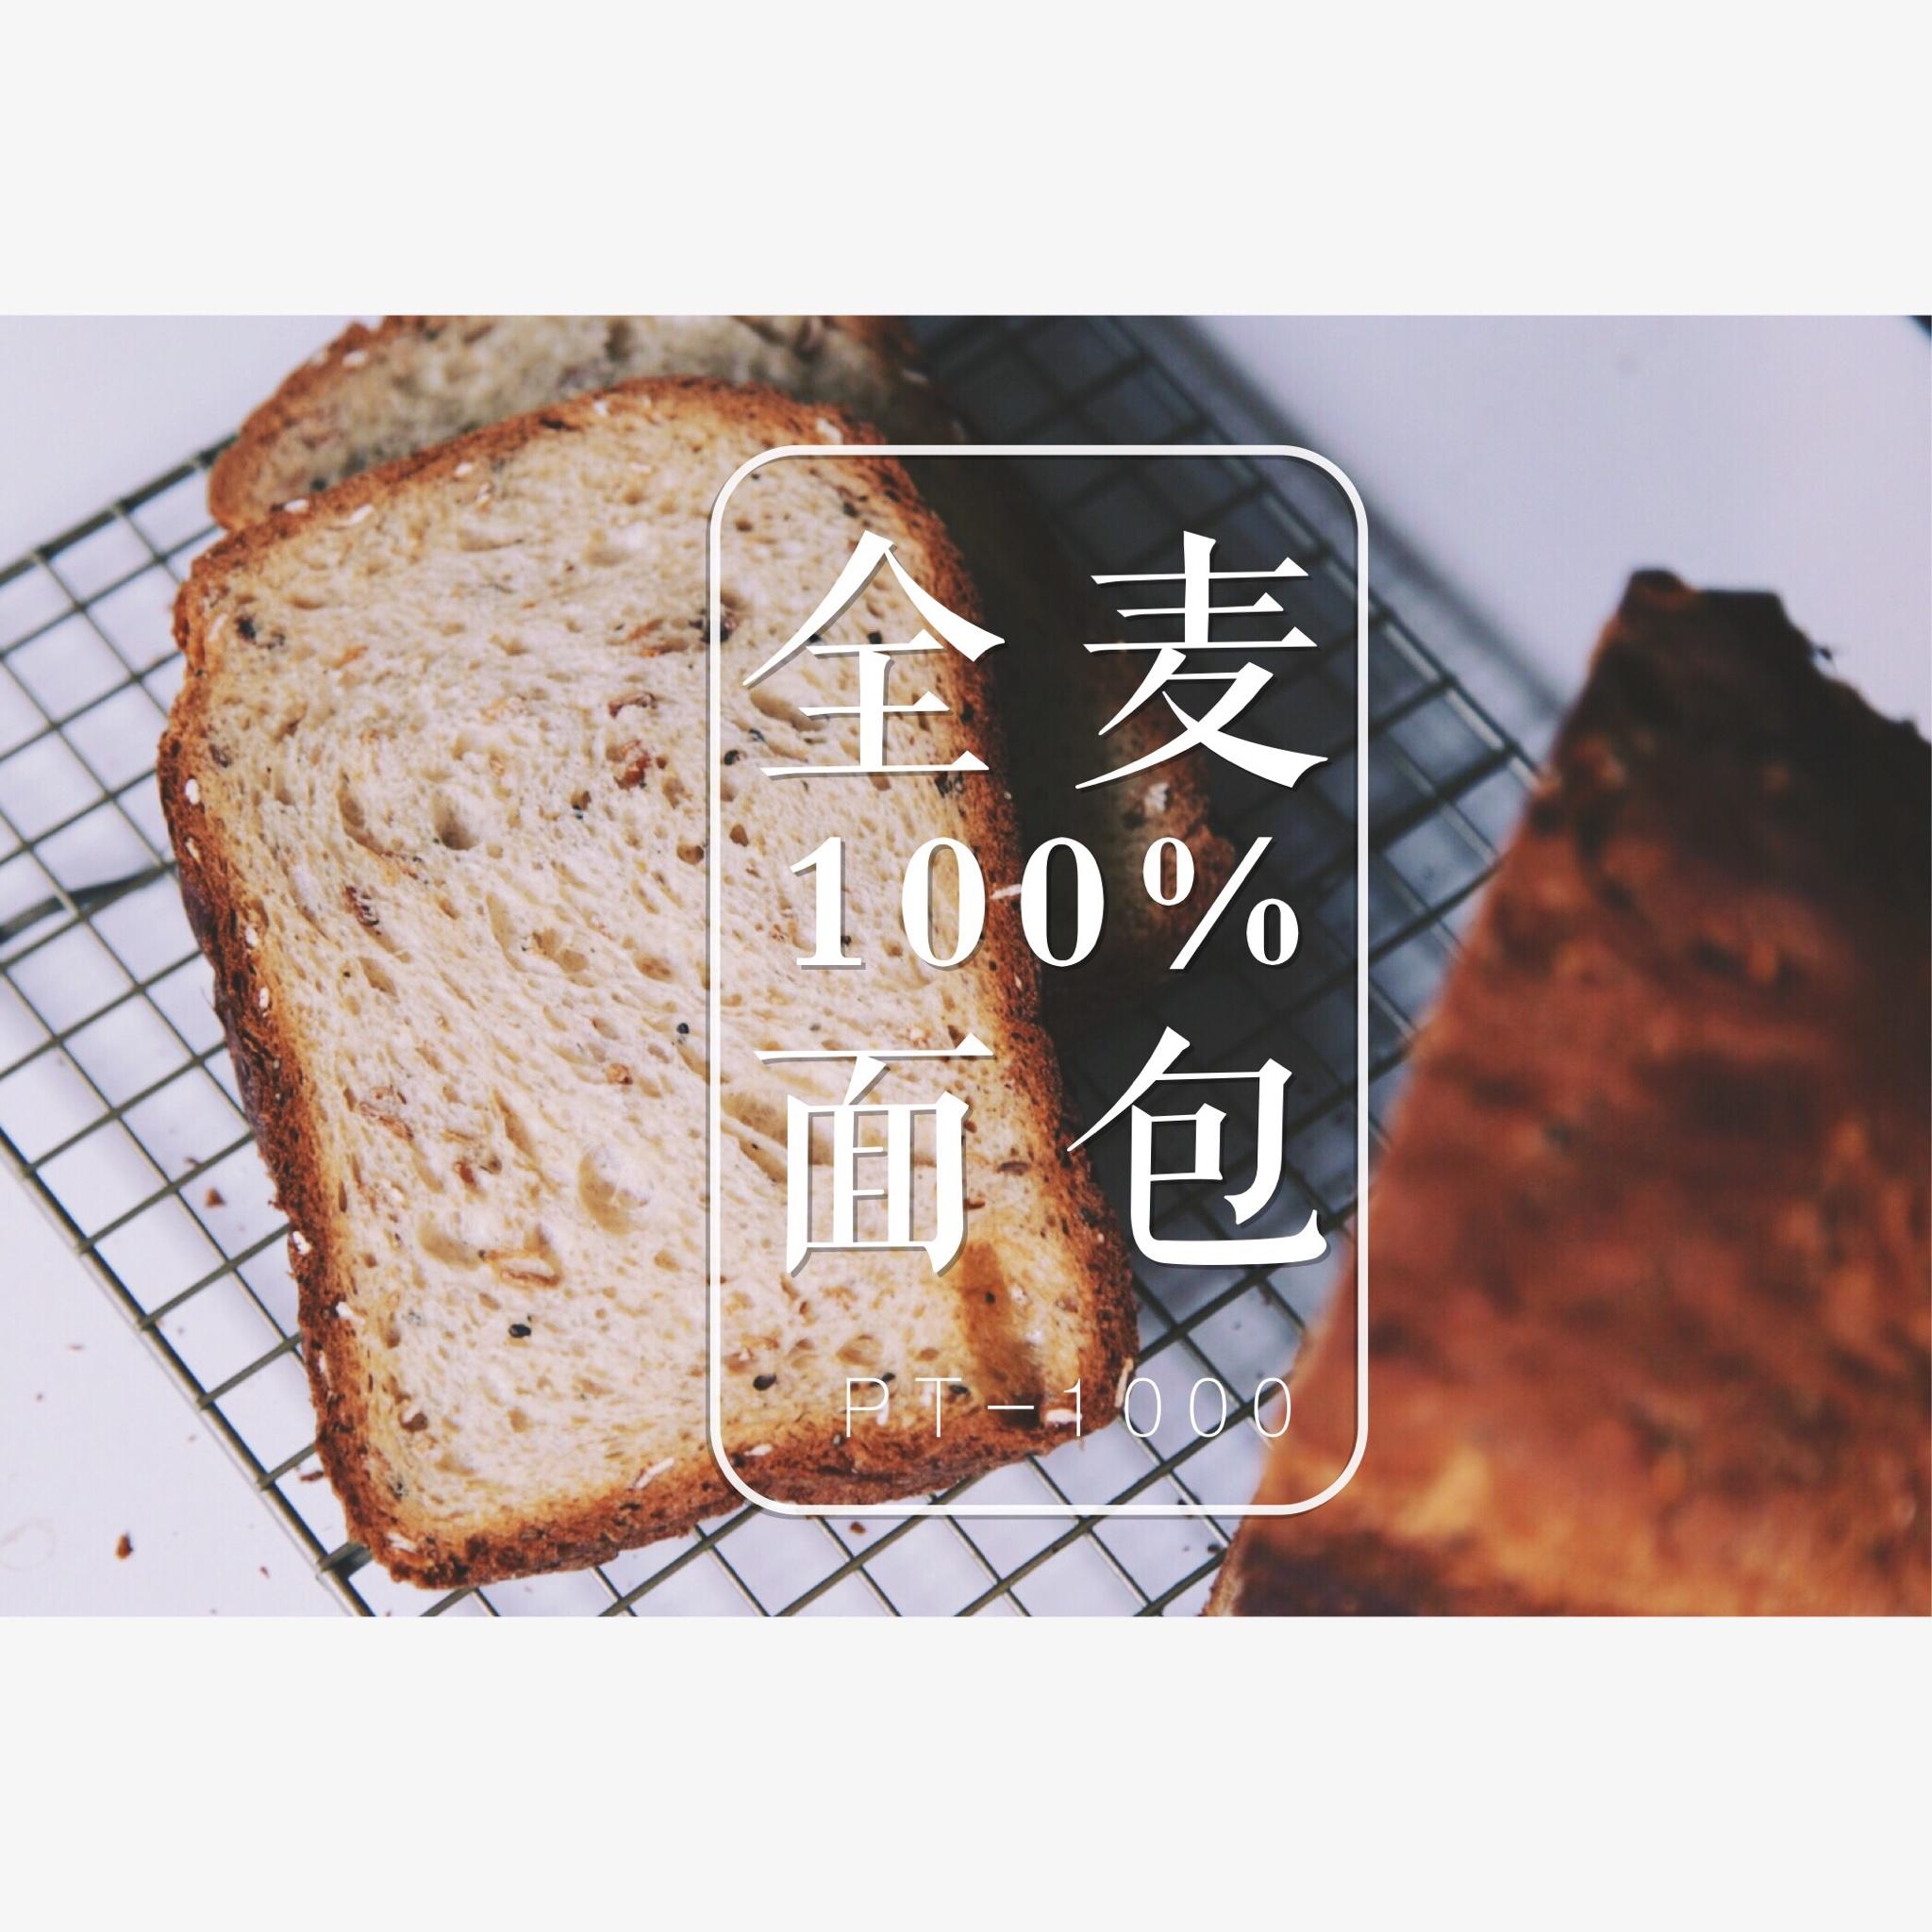 100%全麦面包-pt1000面包机的做法